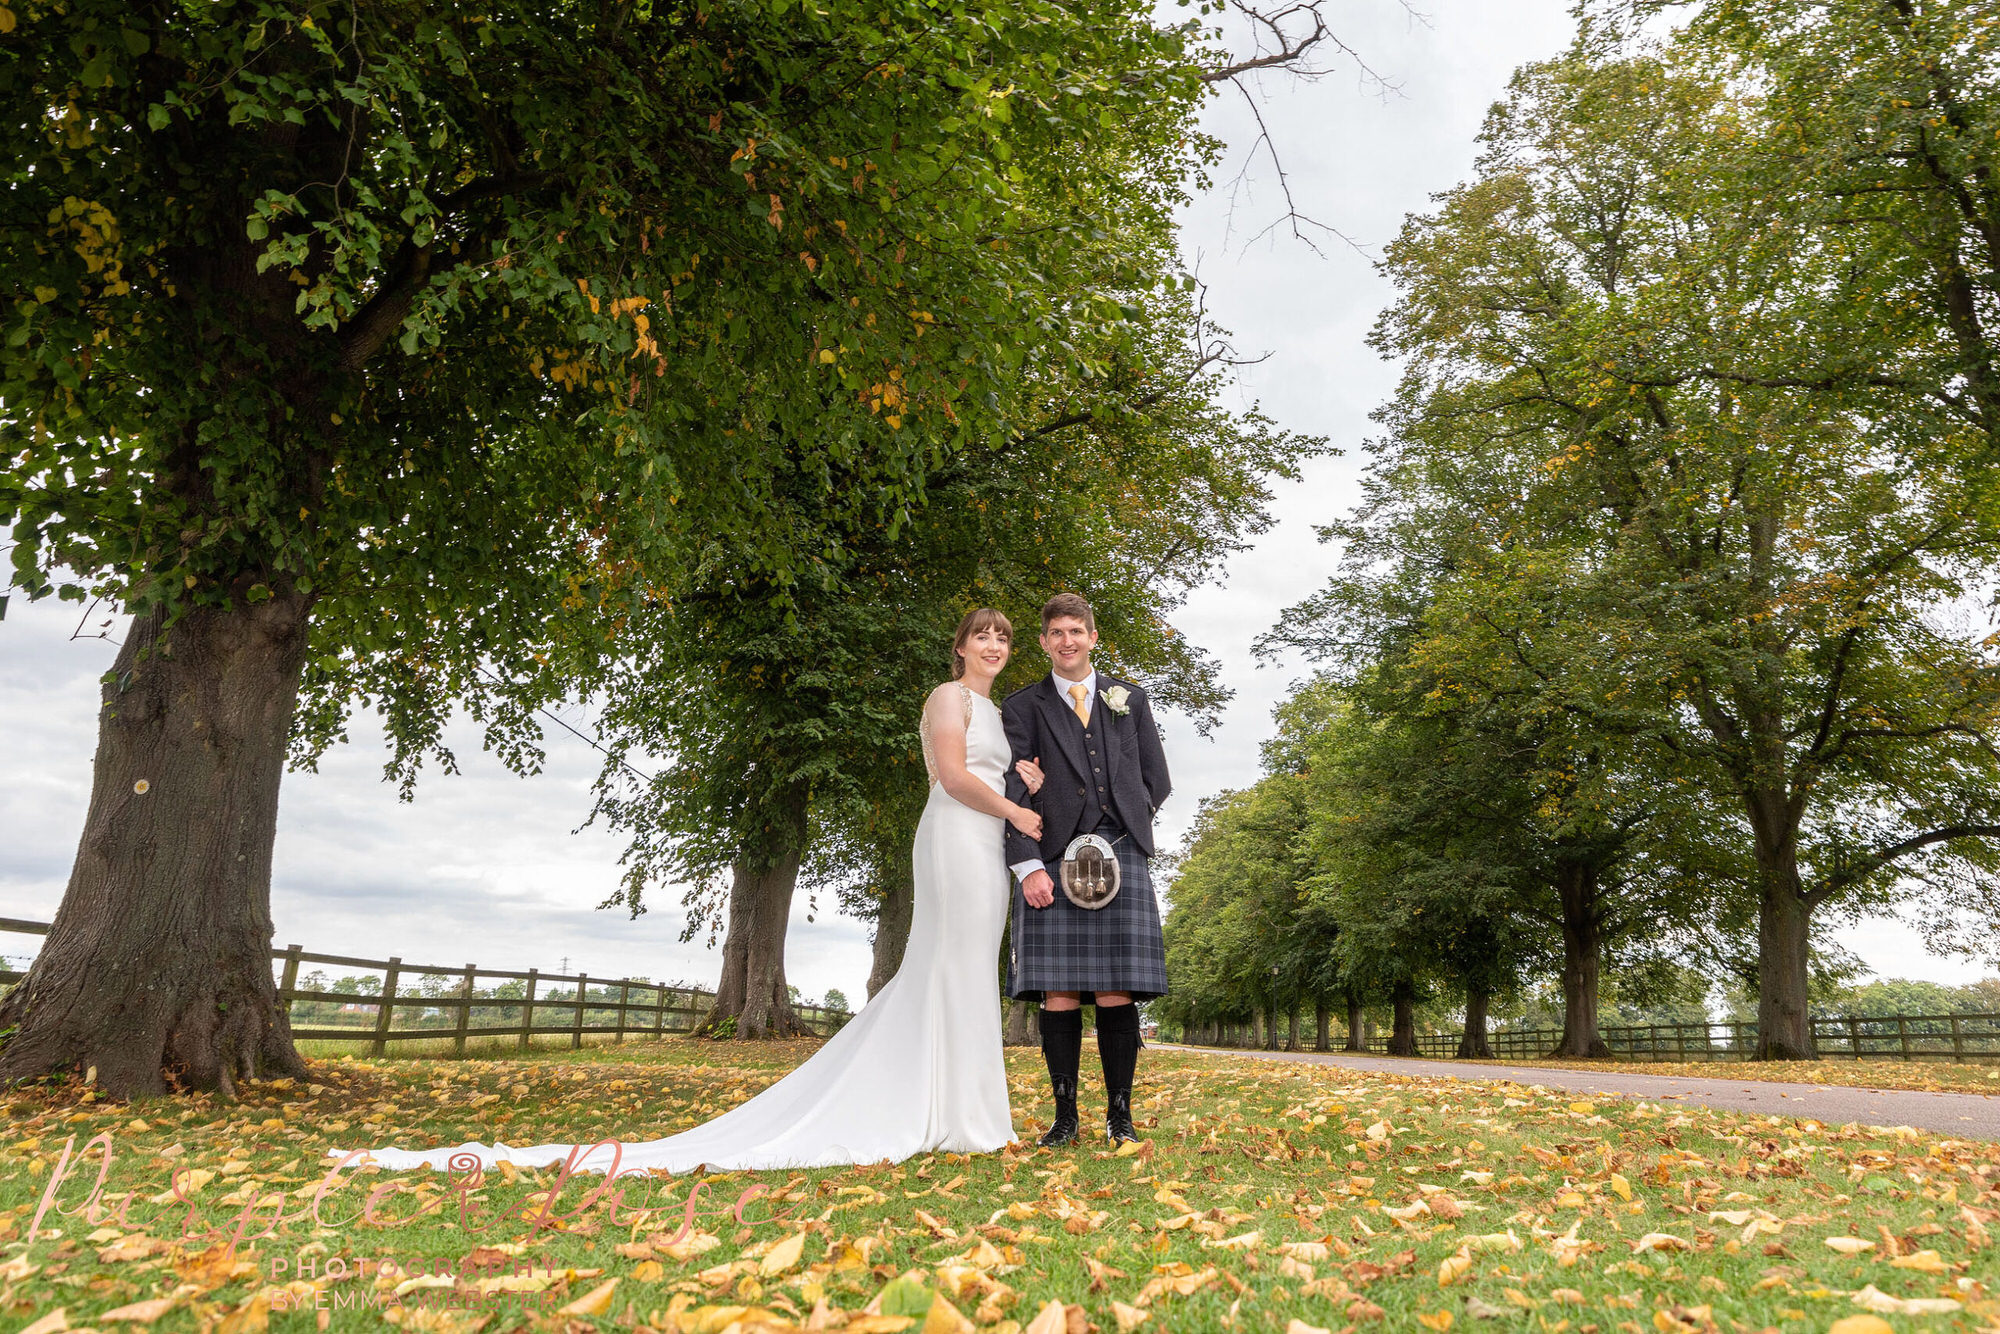 Bride and groom stood amongst autumn leaf's